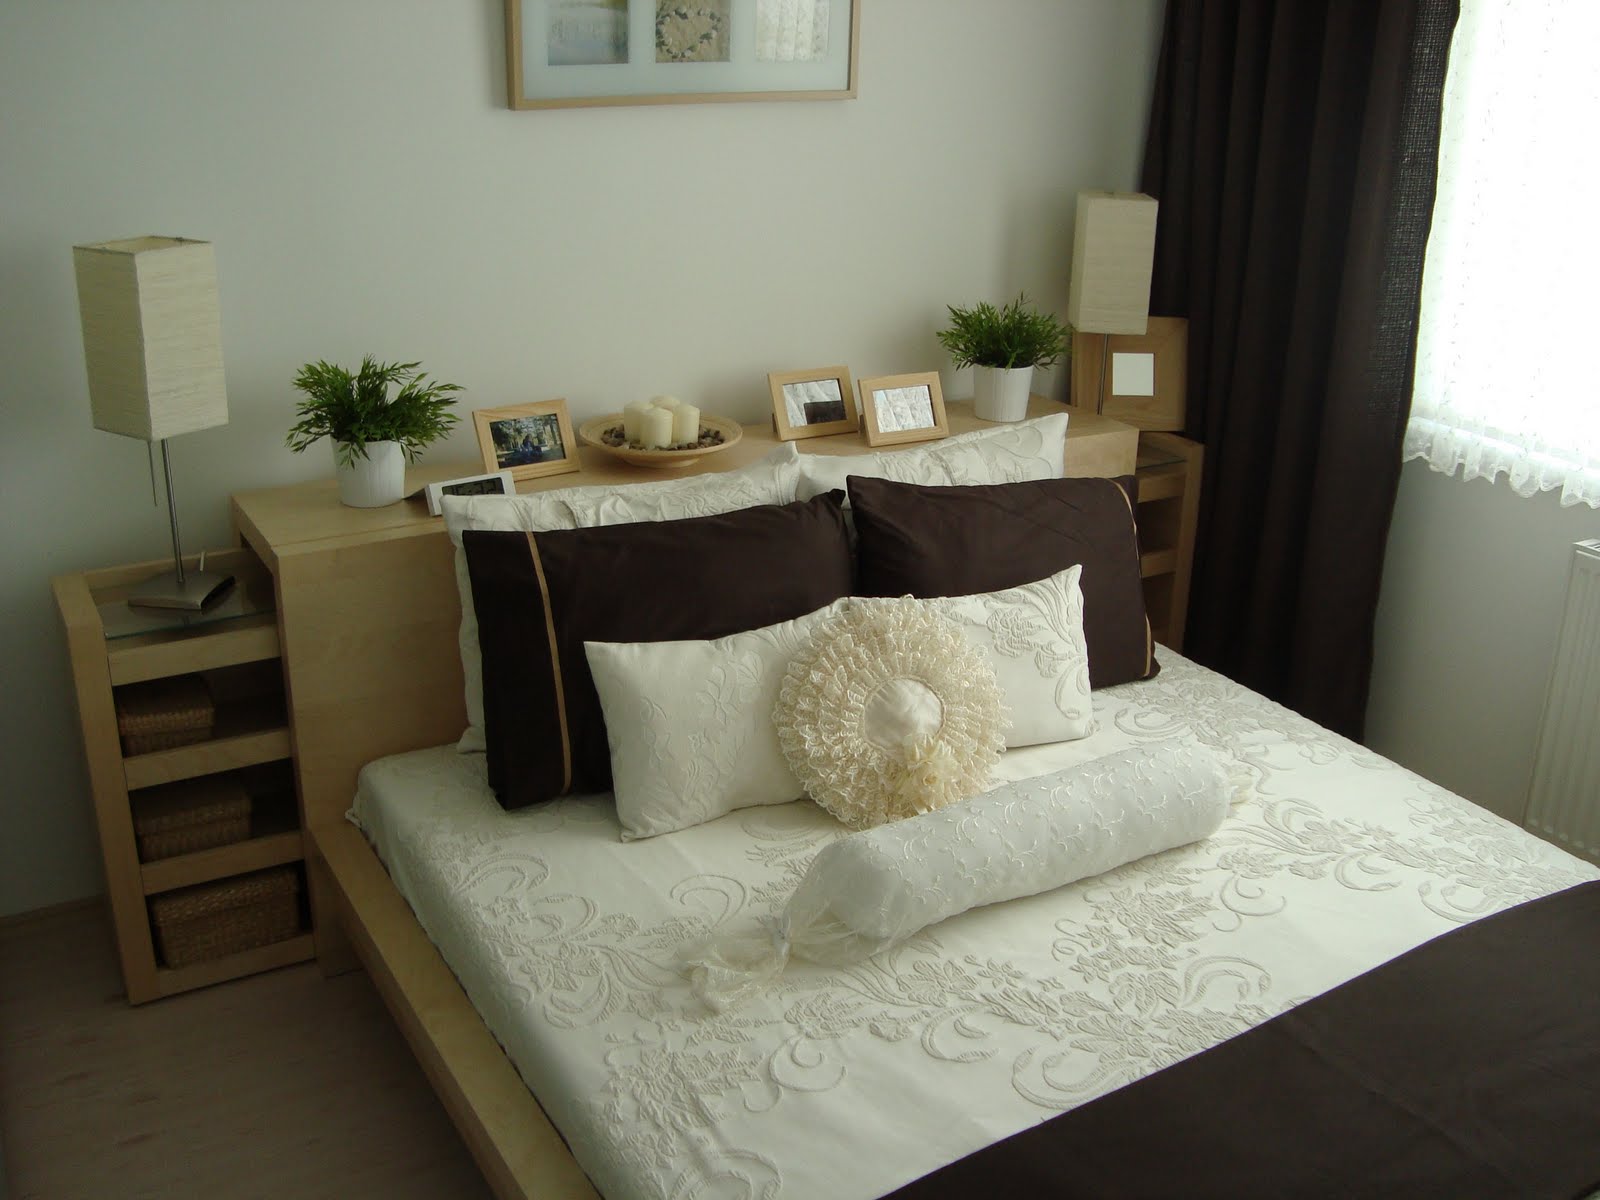 Yatak Odası Dekorasyonu (Bedroom Decoration)